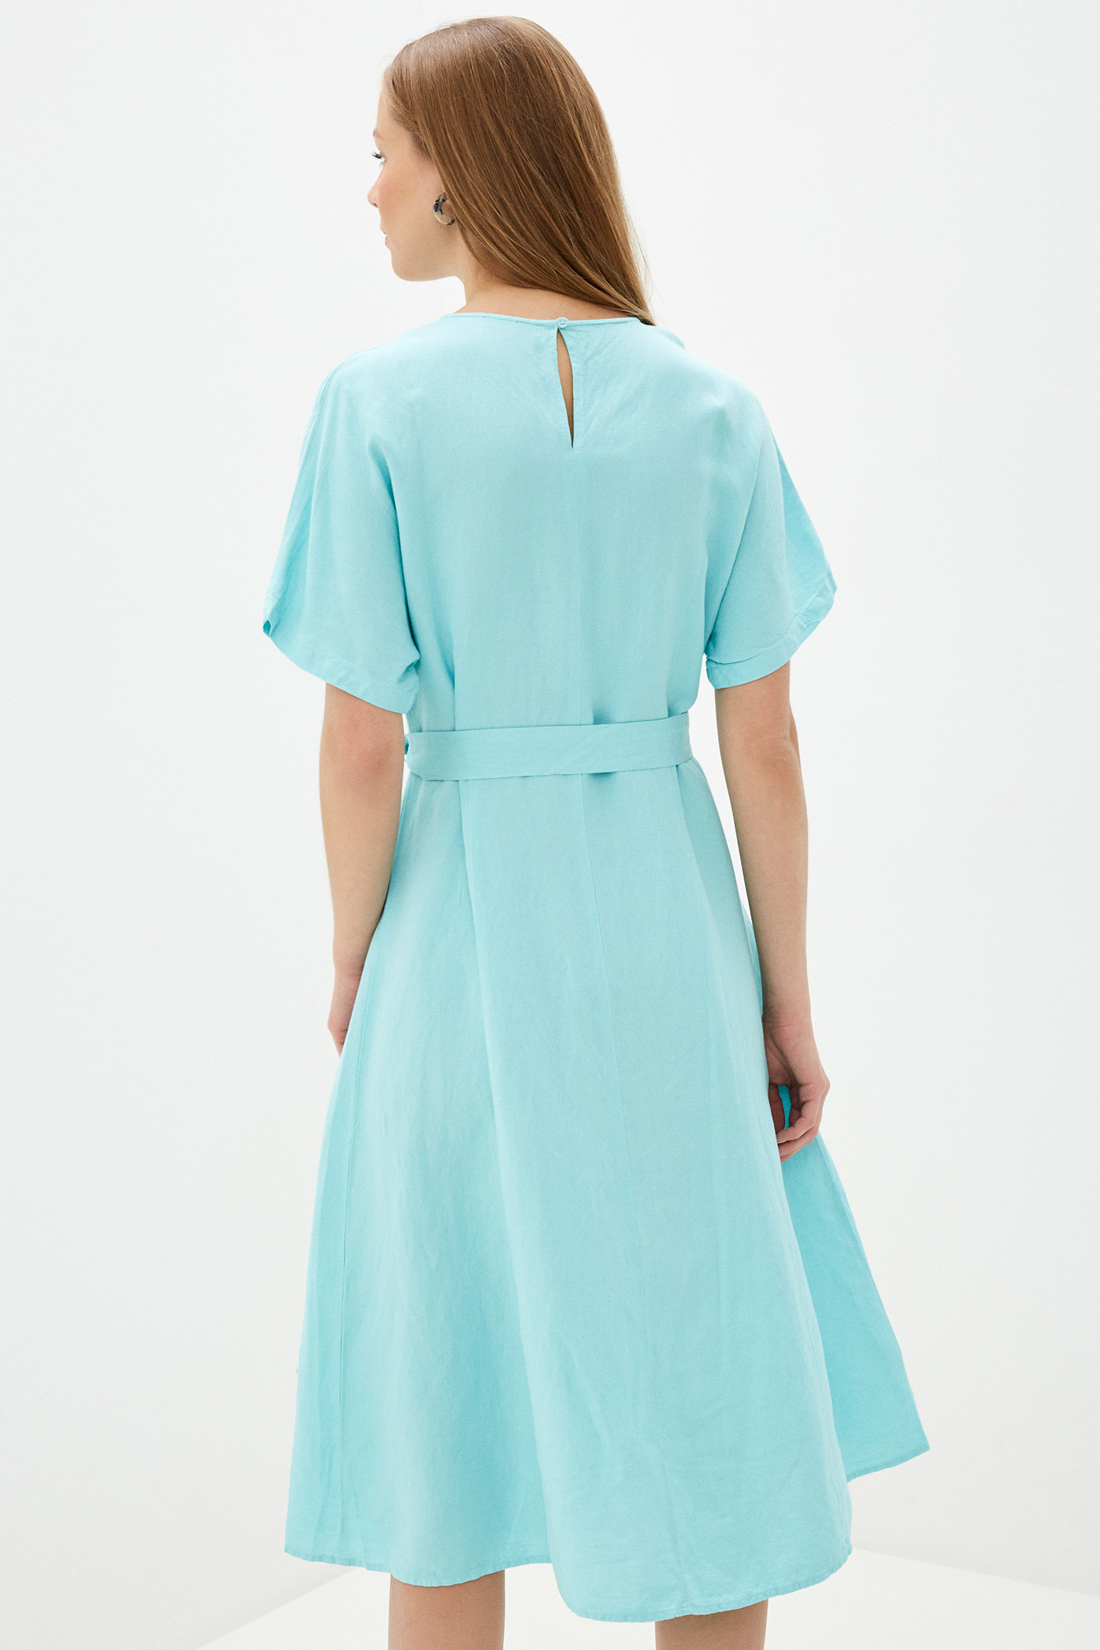 Платье (арт. baon B450056), размер L, цвет голубой Платье (арт. baon B450056) - фото 2